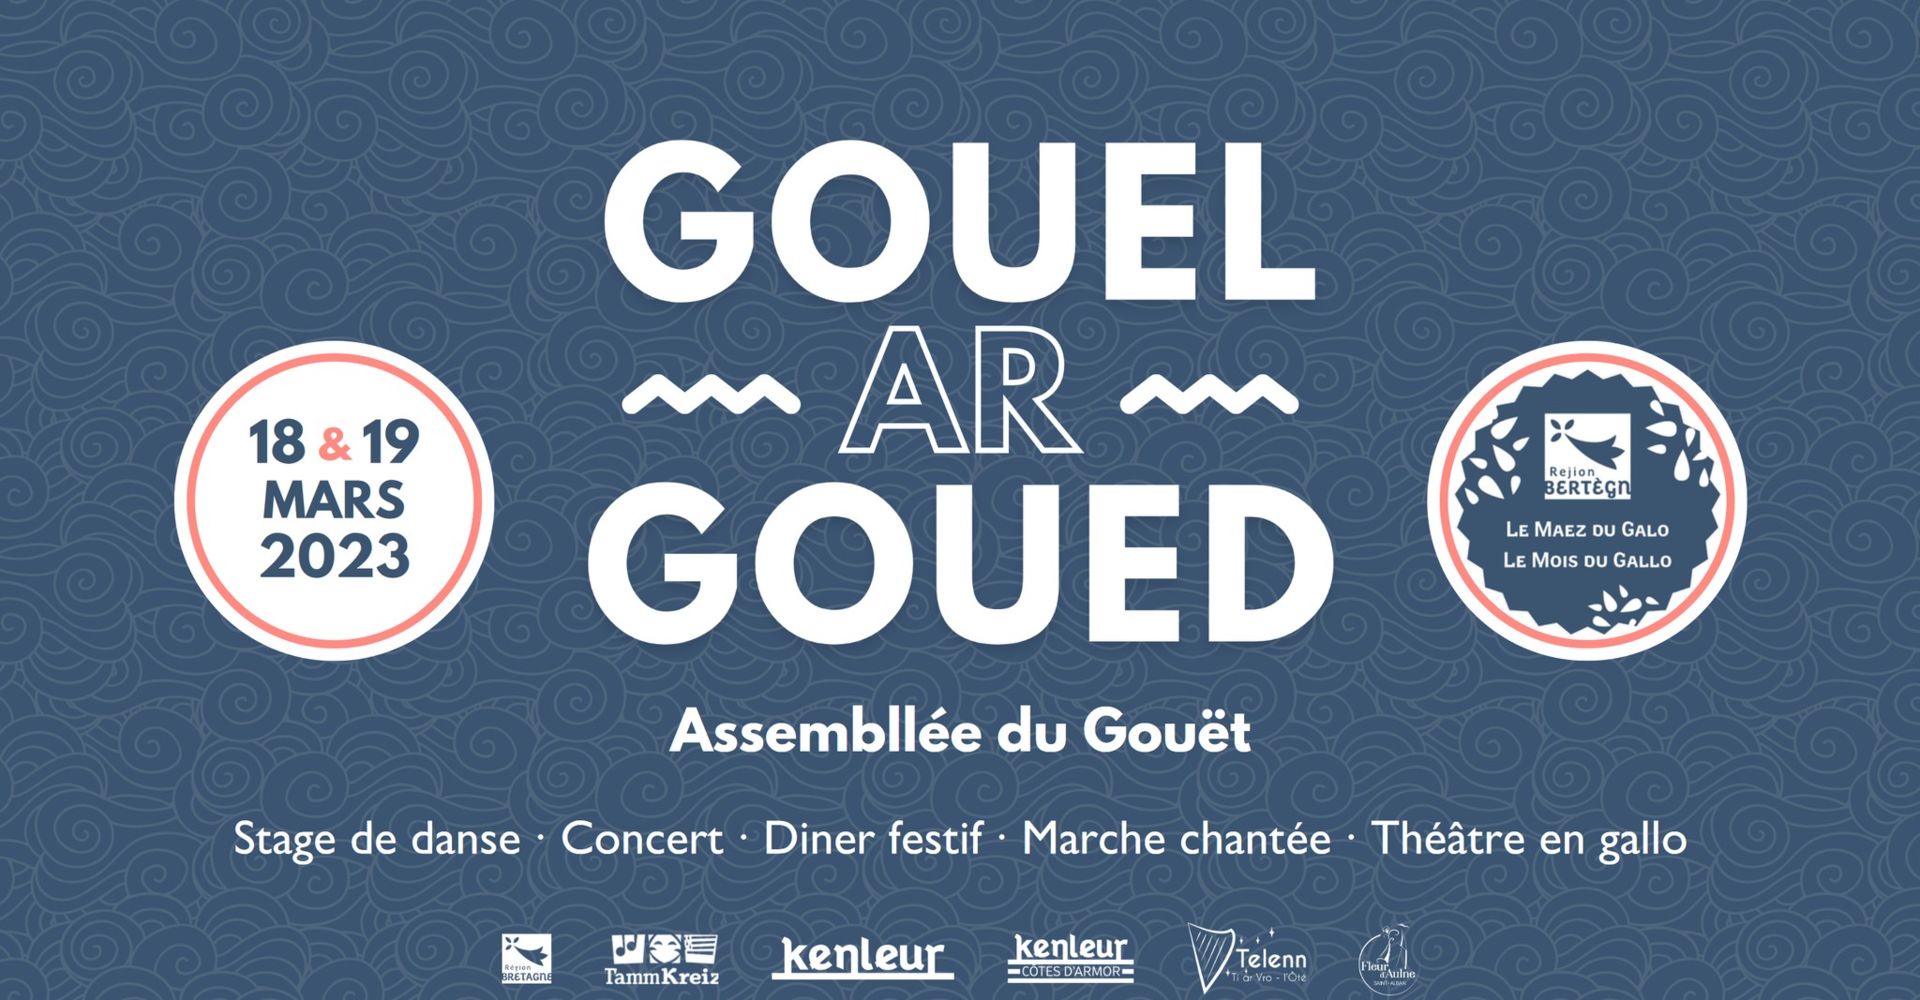 Gouel_ar_Goued-2023